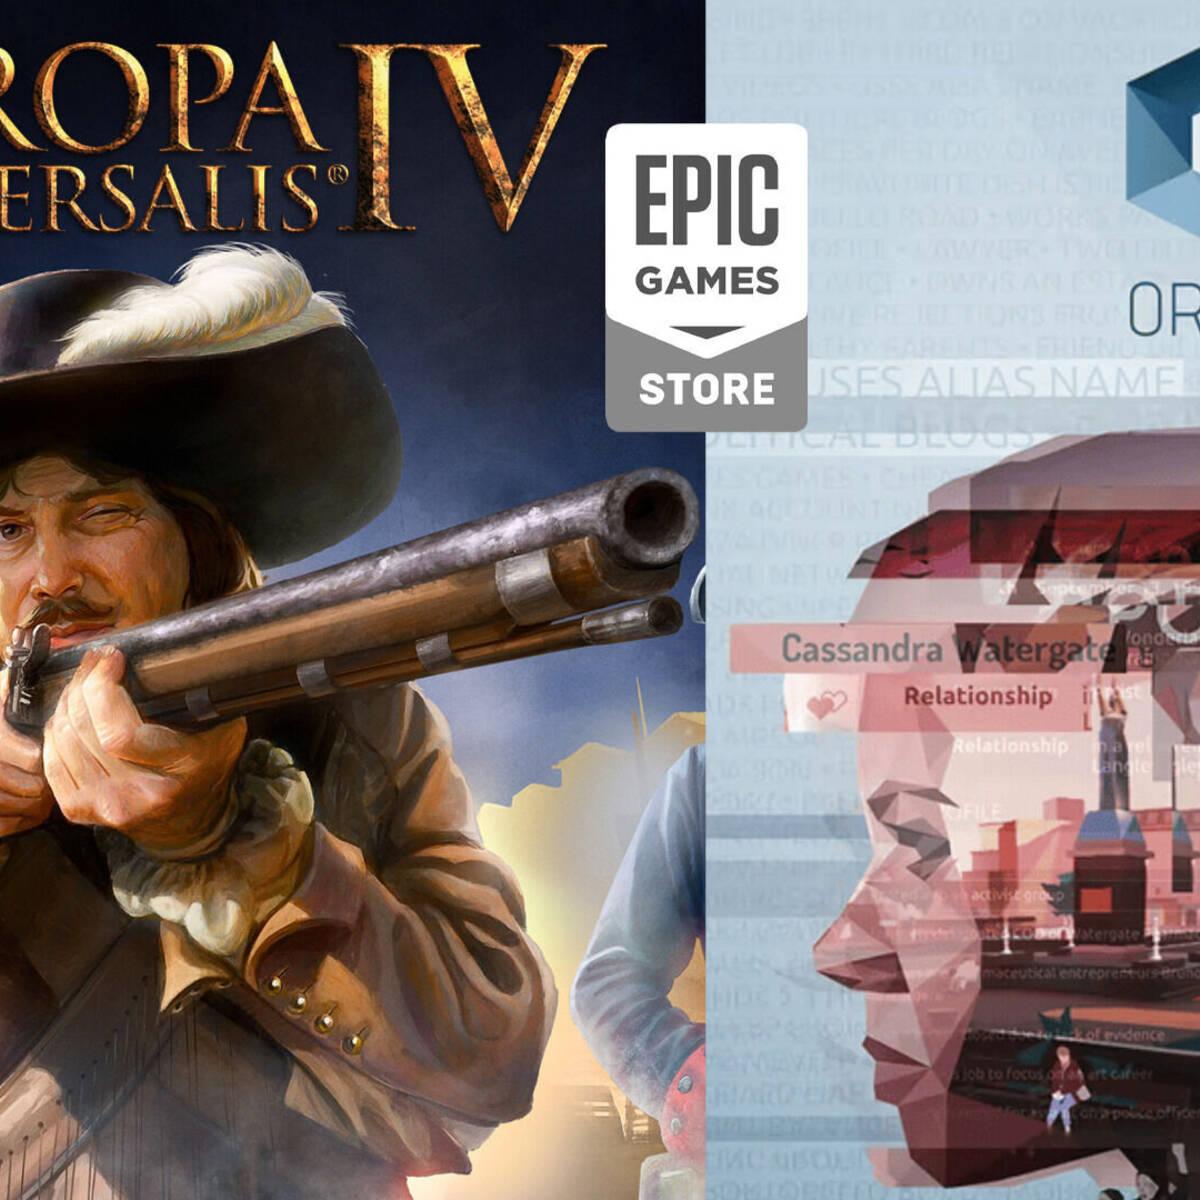 Europa Universalis IV e Orwell: Keeping An Eye On You são os jogos grátis  da semana na Epic Games Store - GameBlast